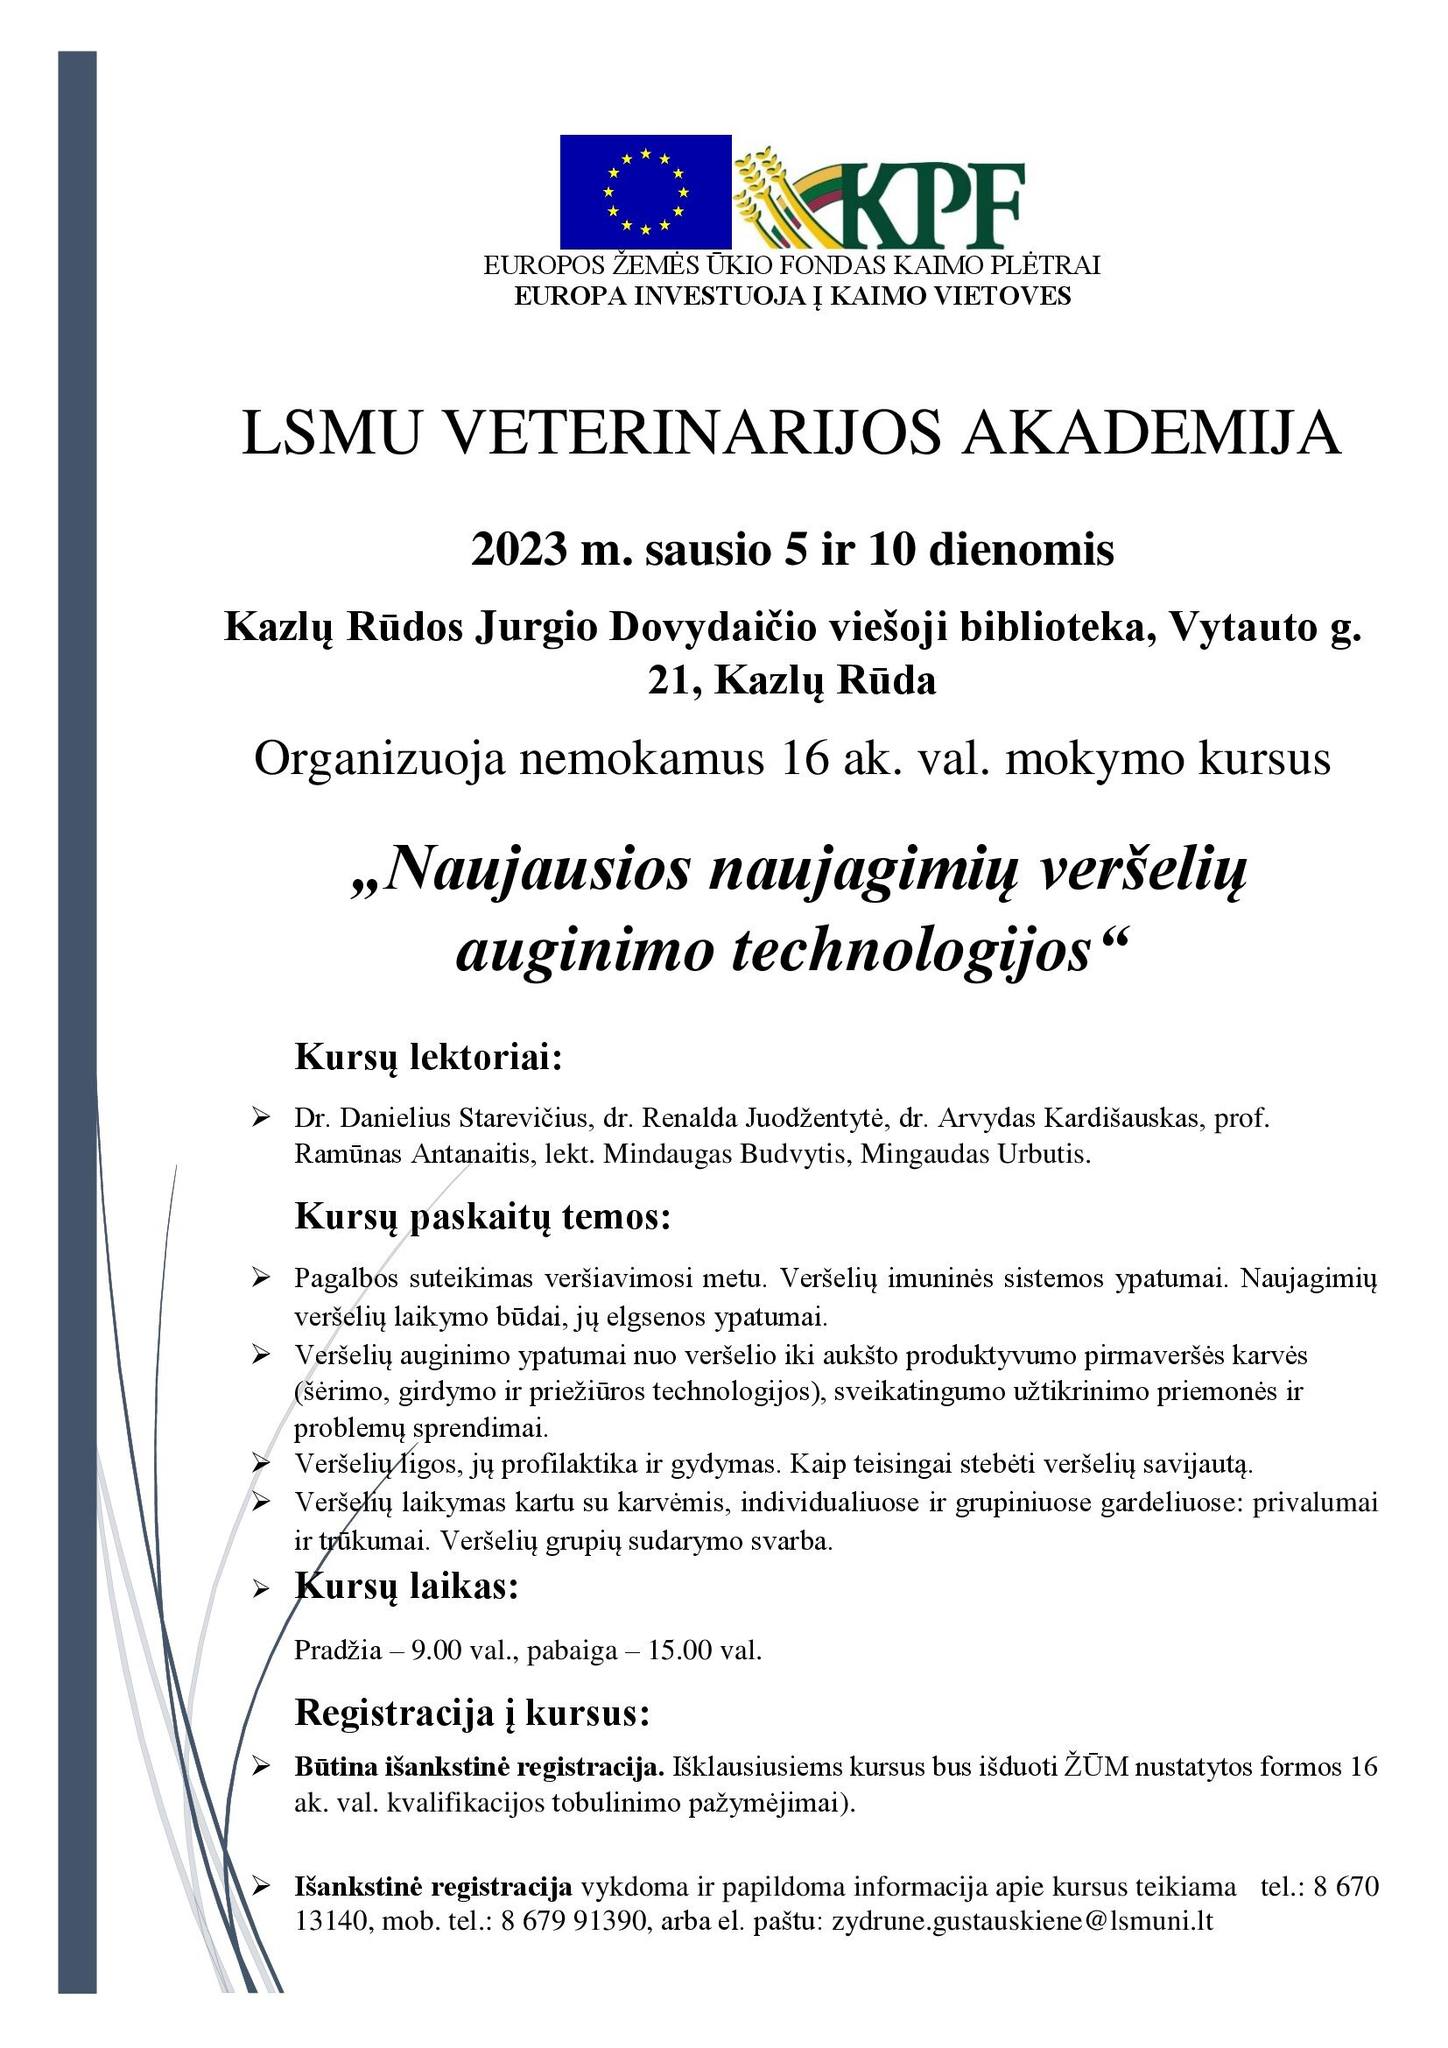 LSMU Veterinarijos akademijos mokymai